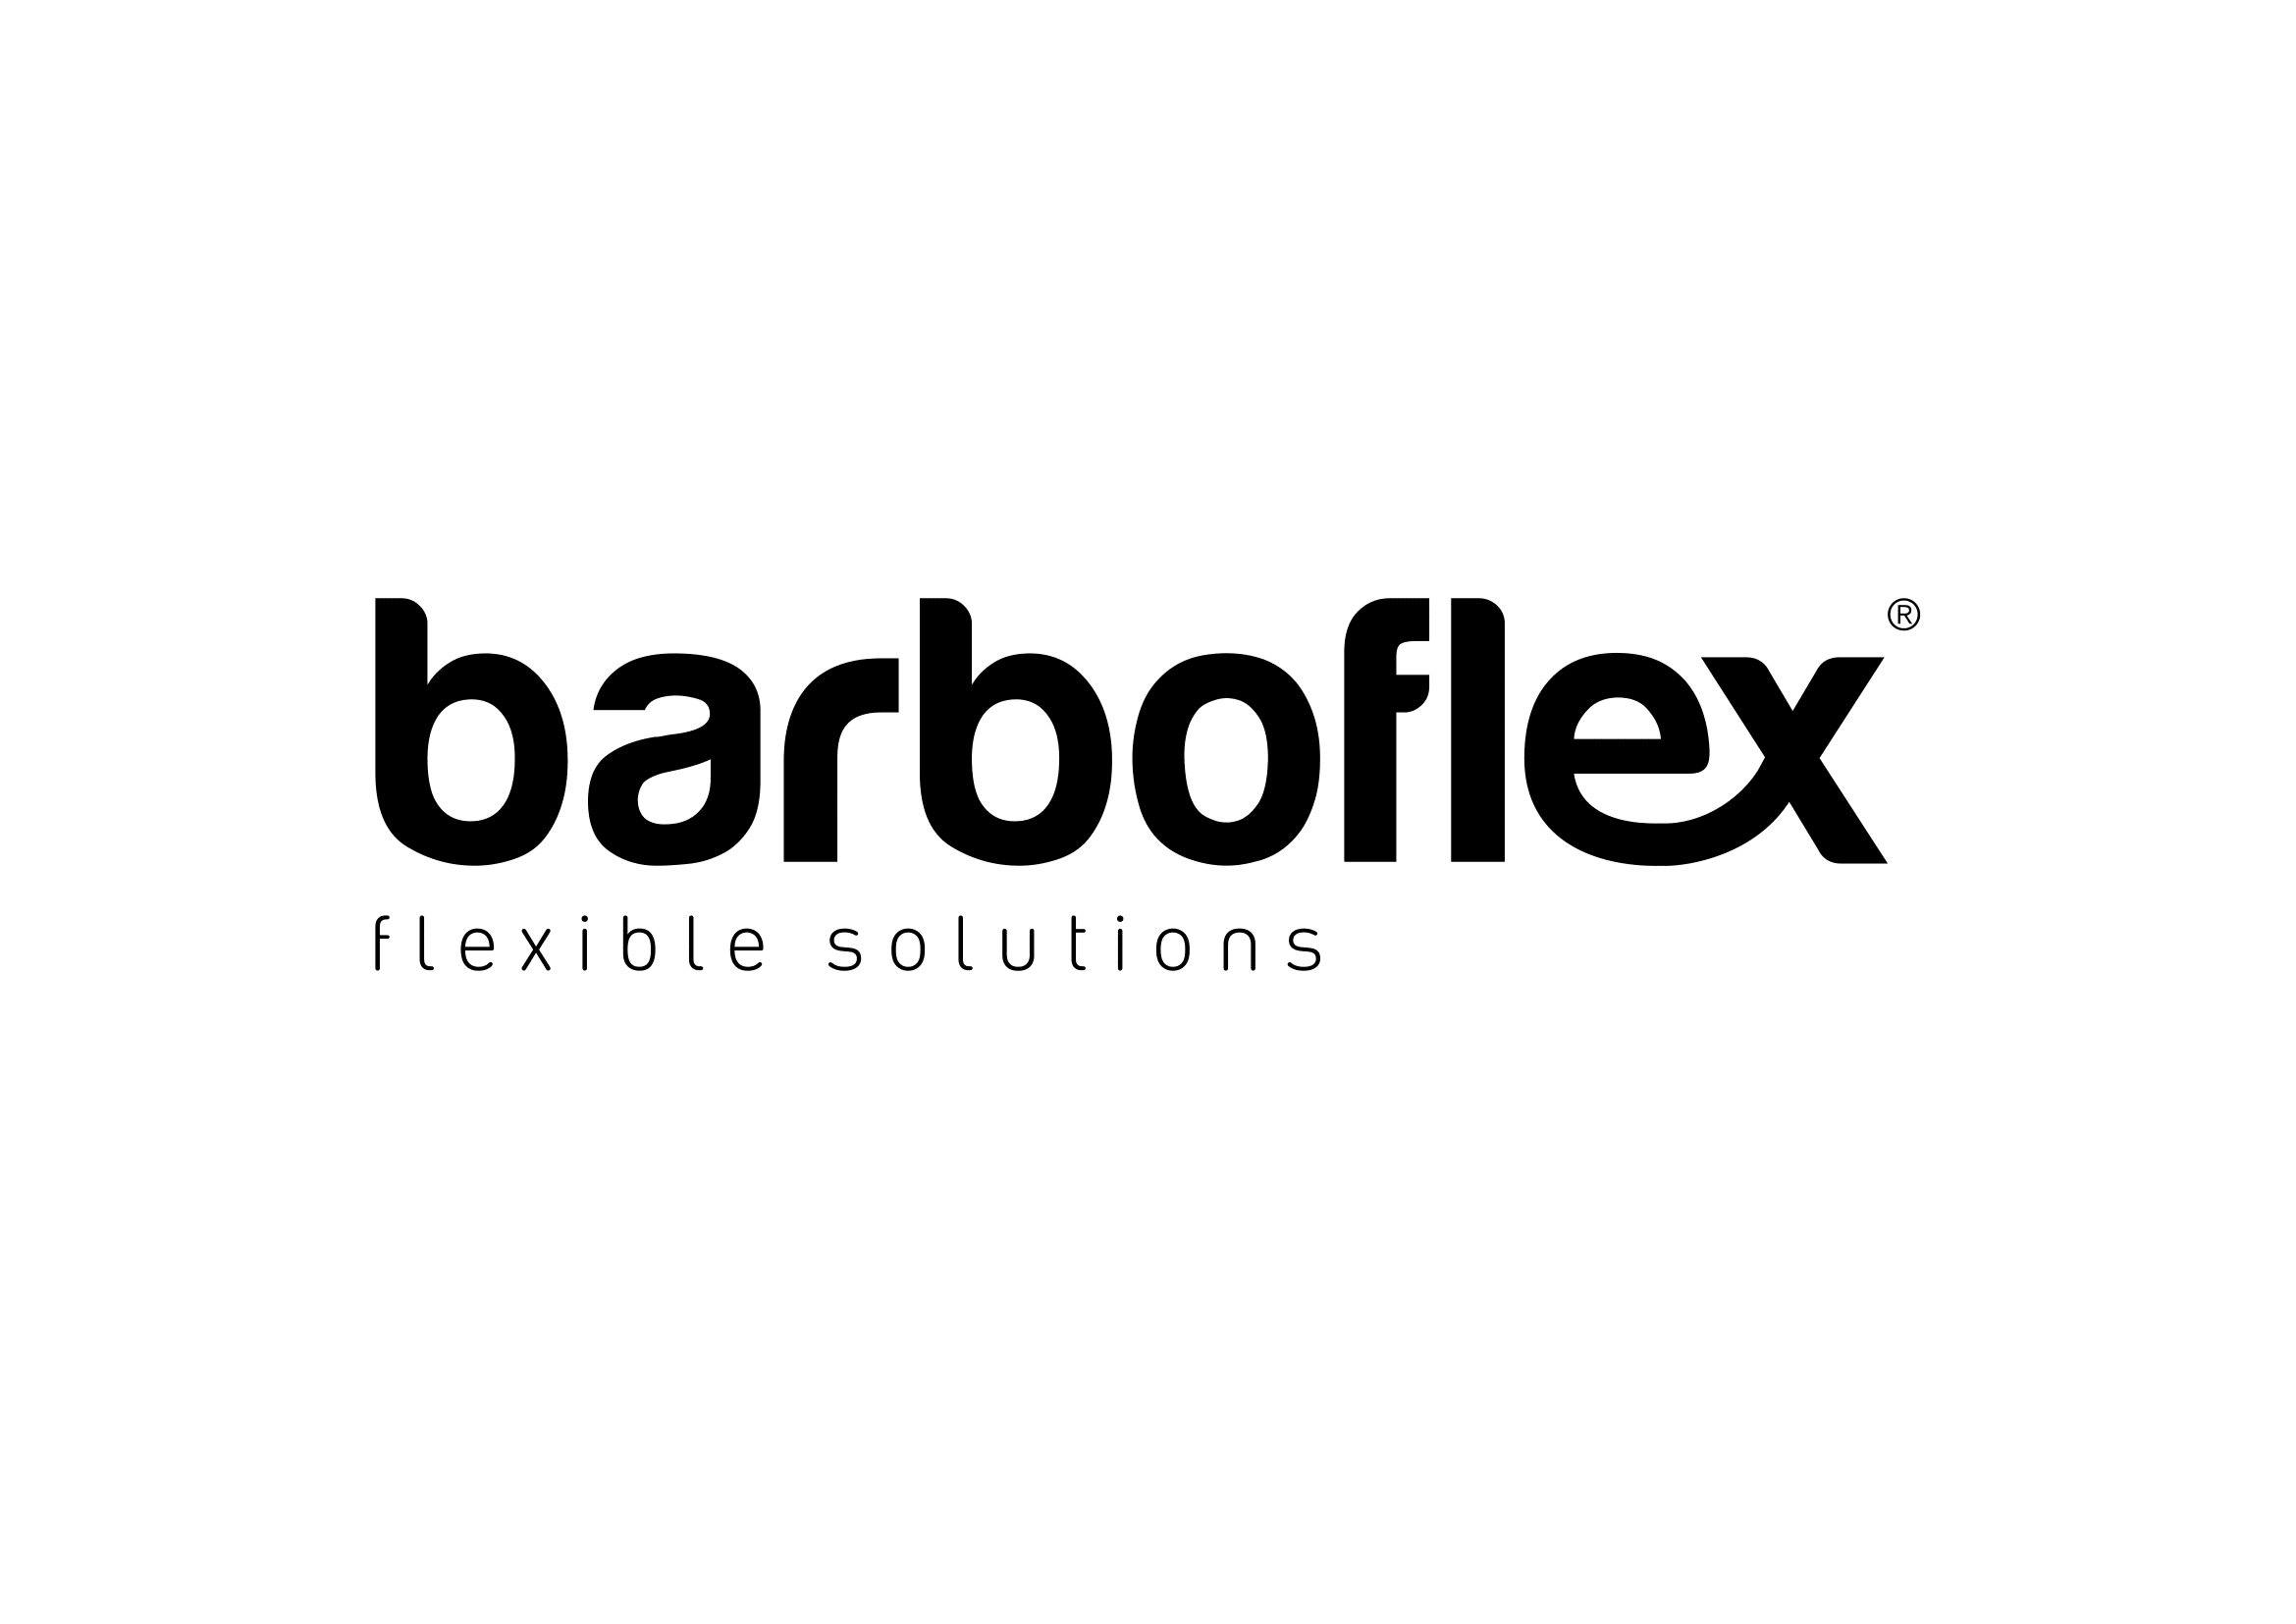 barboflex